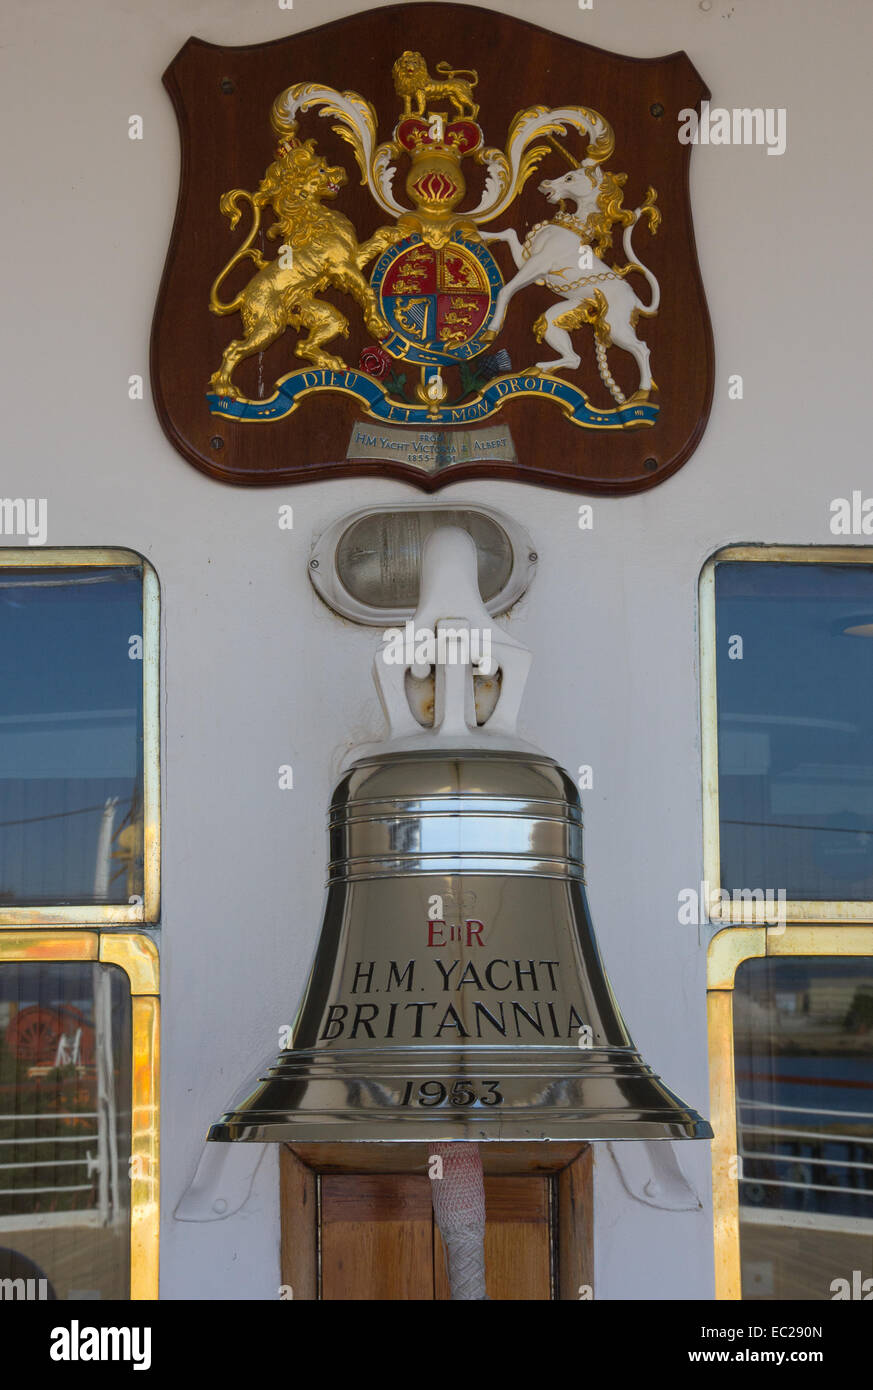 Schiffsglocke von H M Yacht Britannia unter königliches Wappen Stockfoto